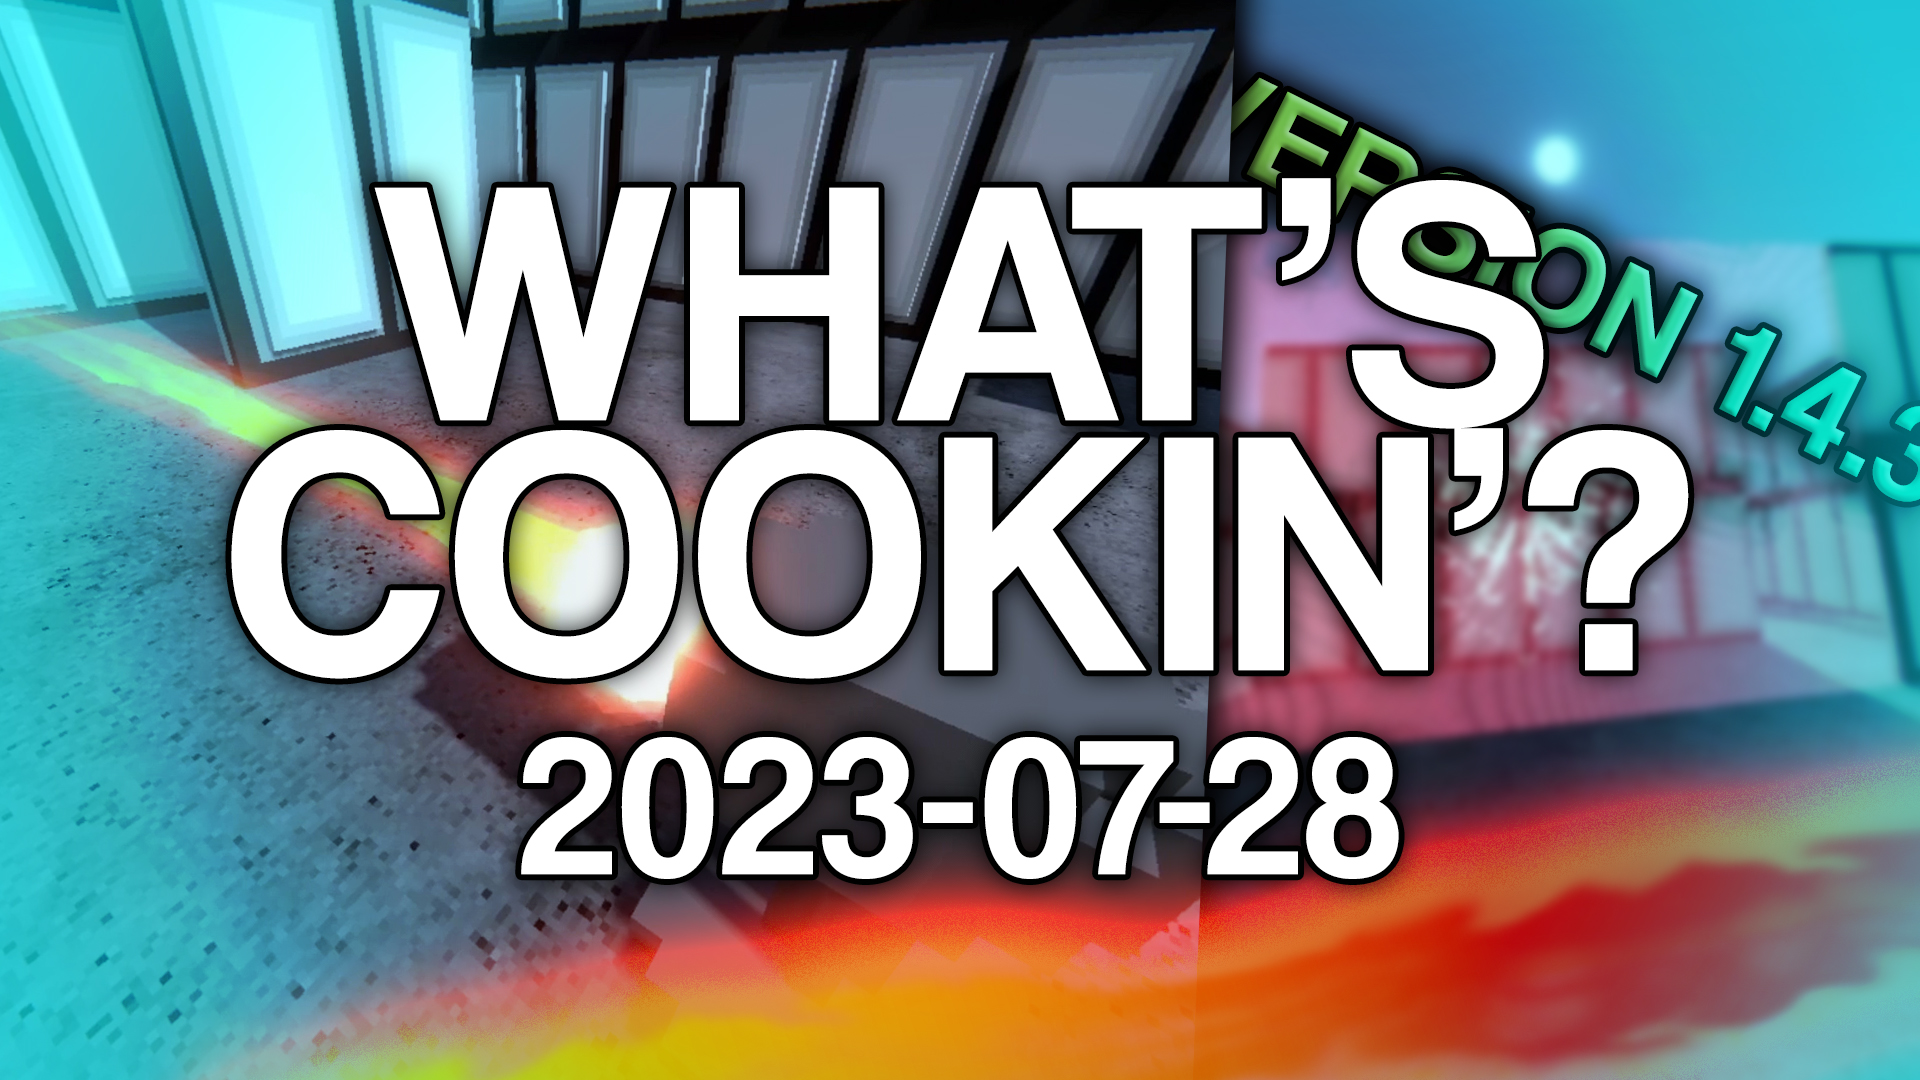 Cookin2023 07 28